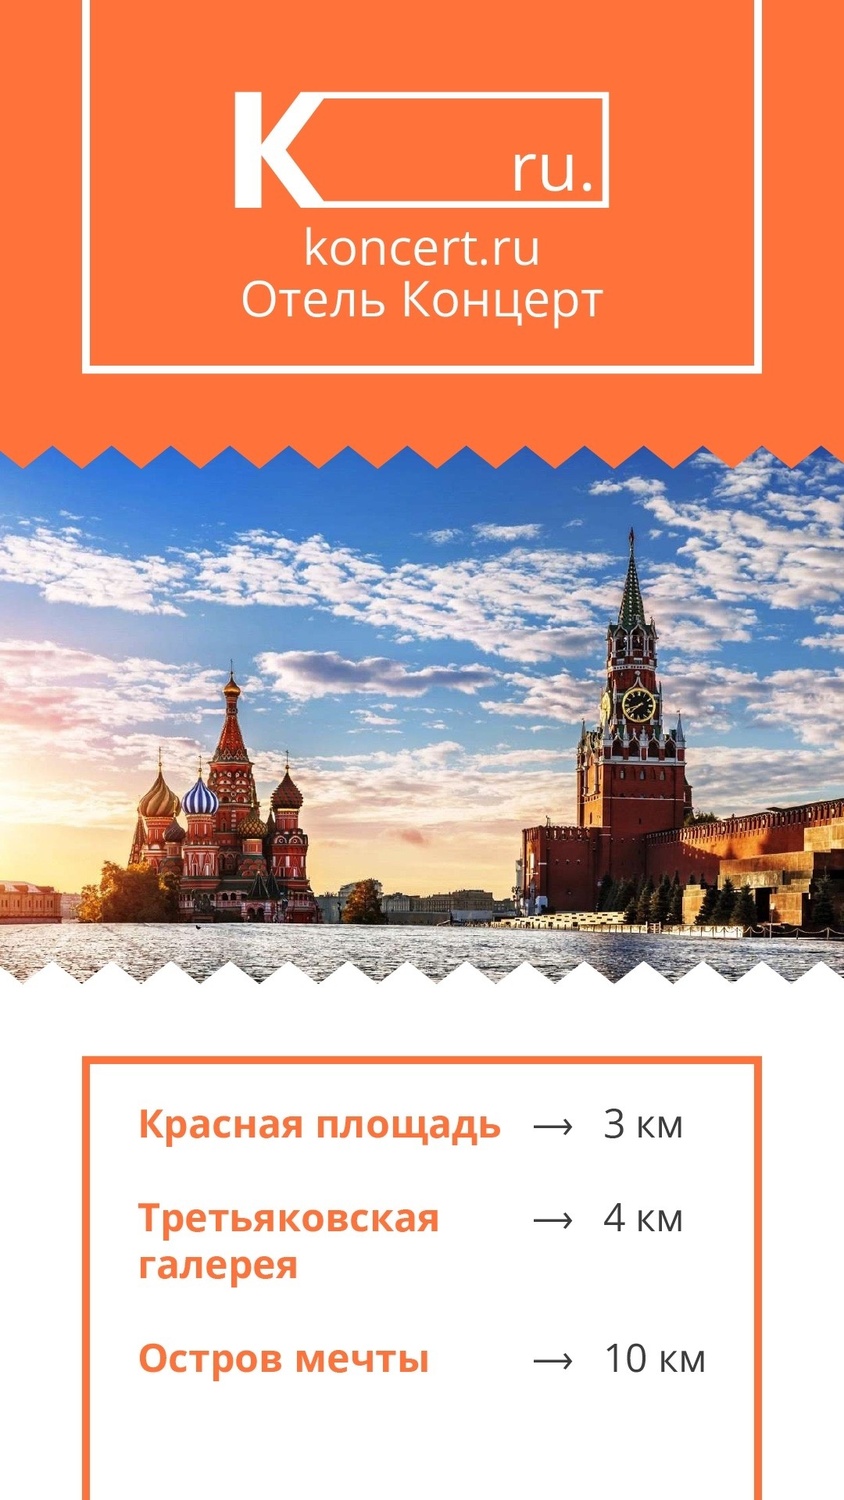 Красная площадь всего 3-х км от гостиницы "Концерт на Таганской". Это примерно 15-20 минут пешком по историческому центру Москвы.